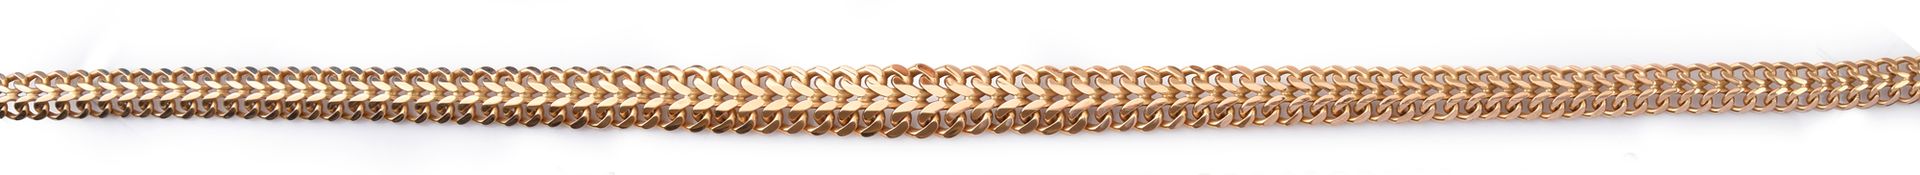 Null 750金项链，双路缘链节，隐形扣和八个安全别针。
60年代的法国作品
L.55 cm
重量：93.6 g